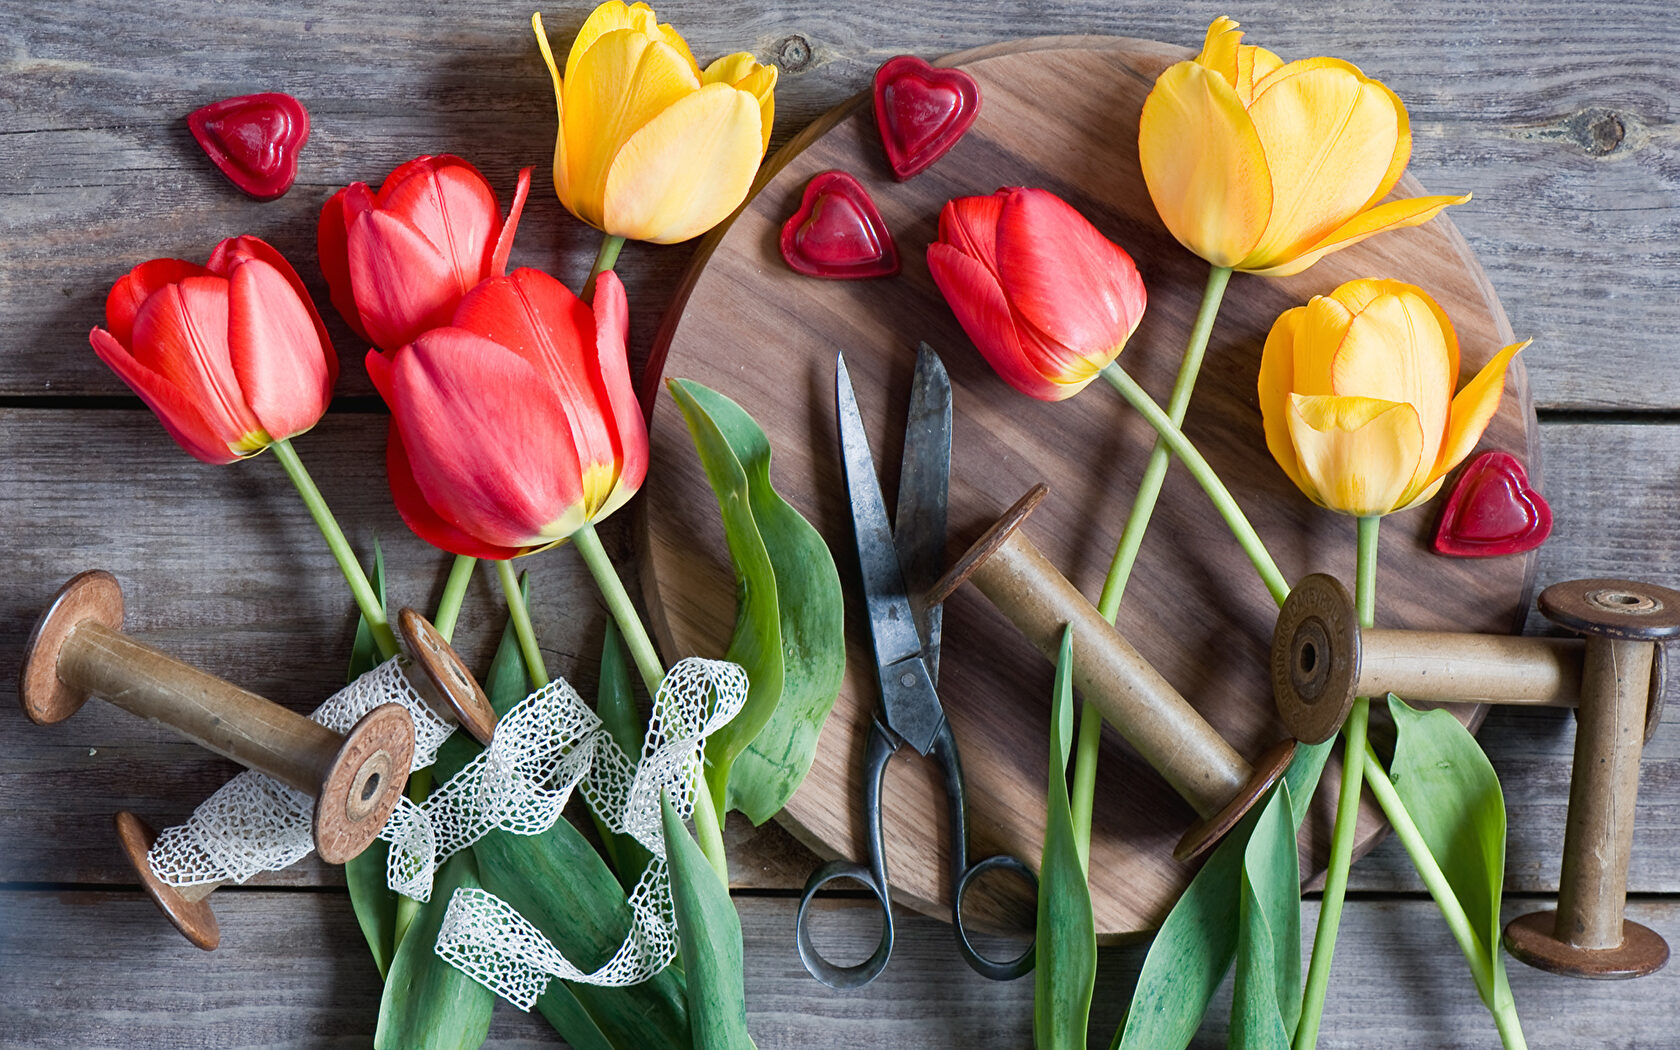 Тюльпаны на деревянном столе